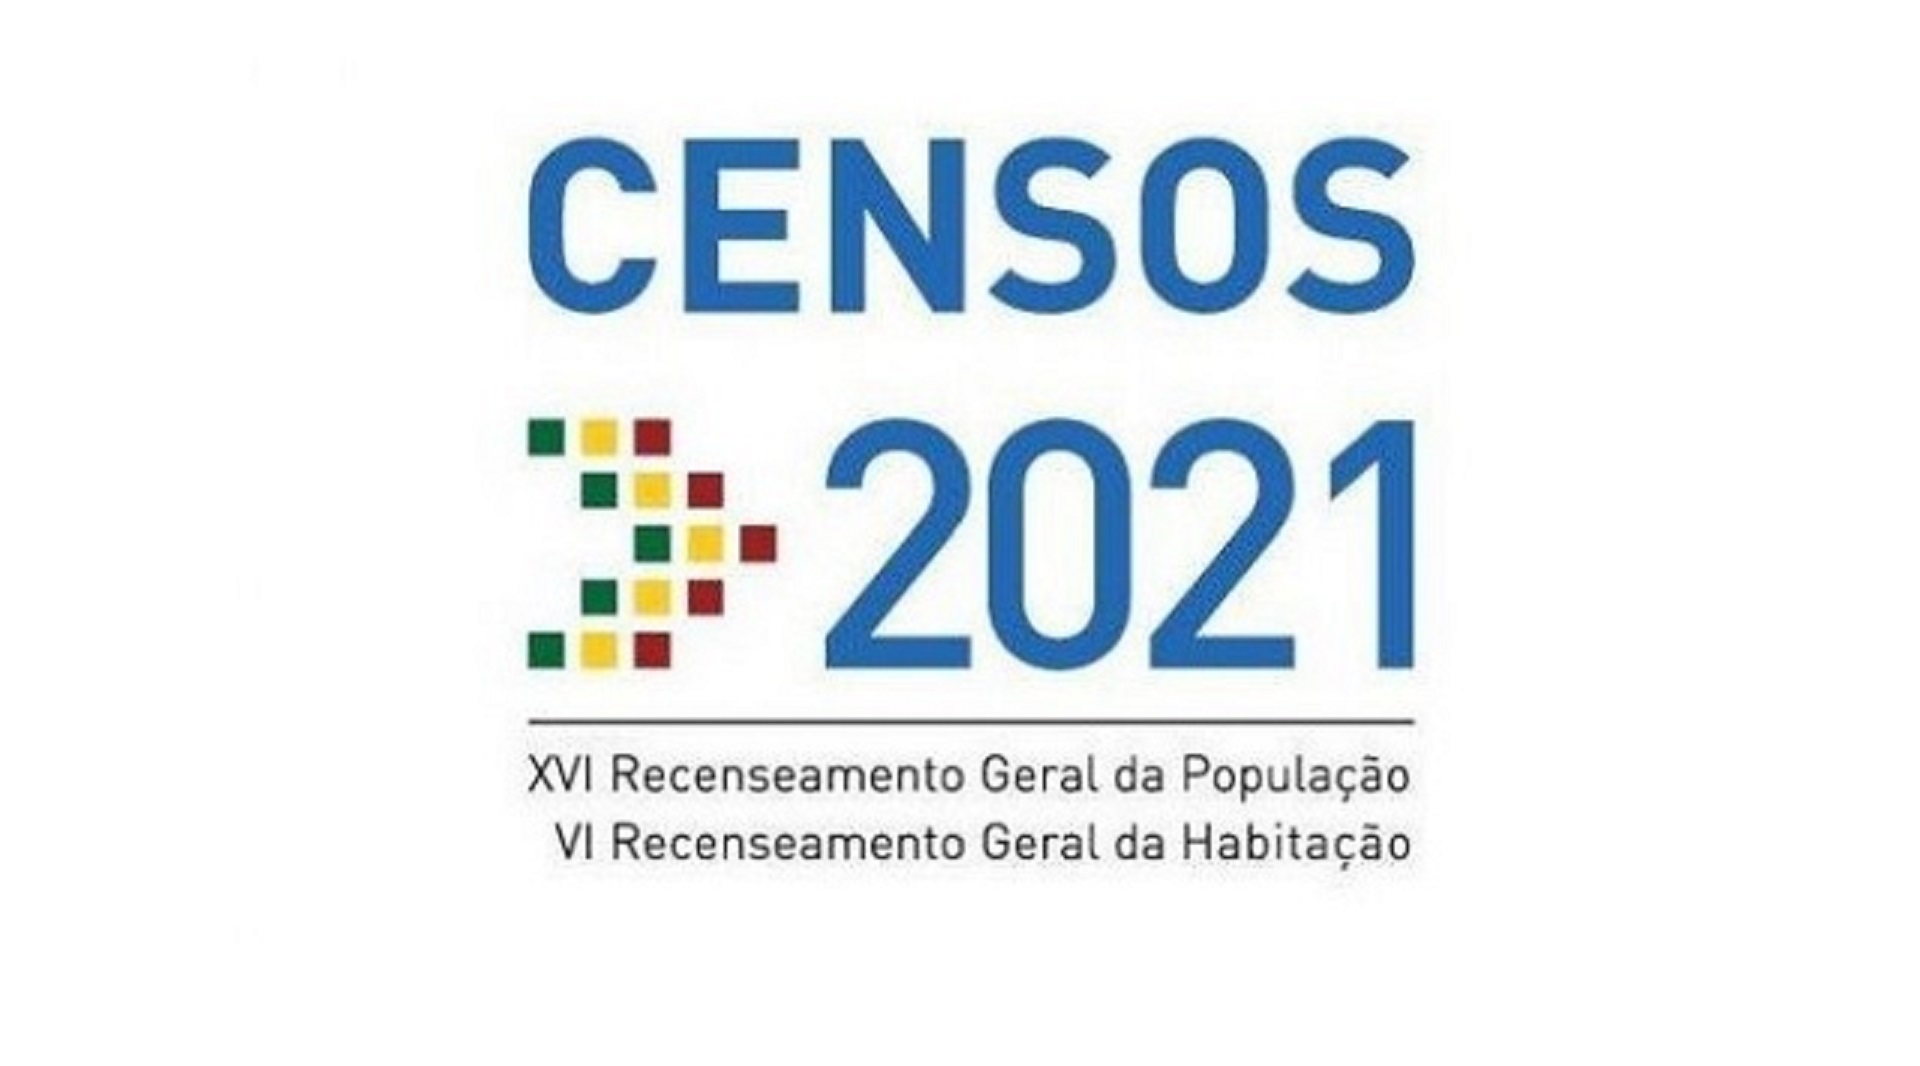 Censos 2021 Ine Esta A Recrutar 11 000 Recenseadores Ate 15 De Fevereiro Regiao De Leiria